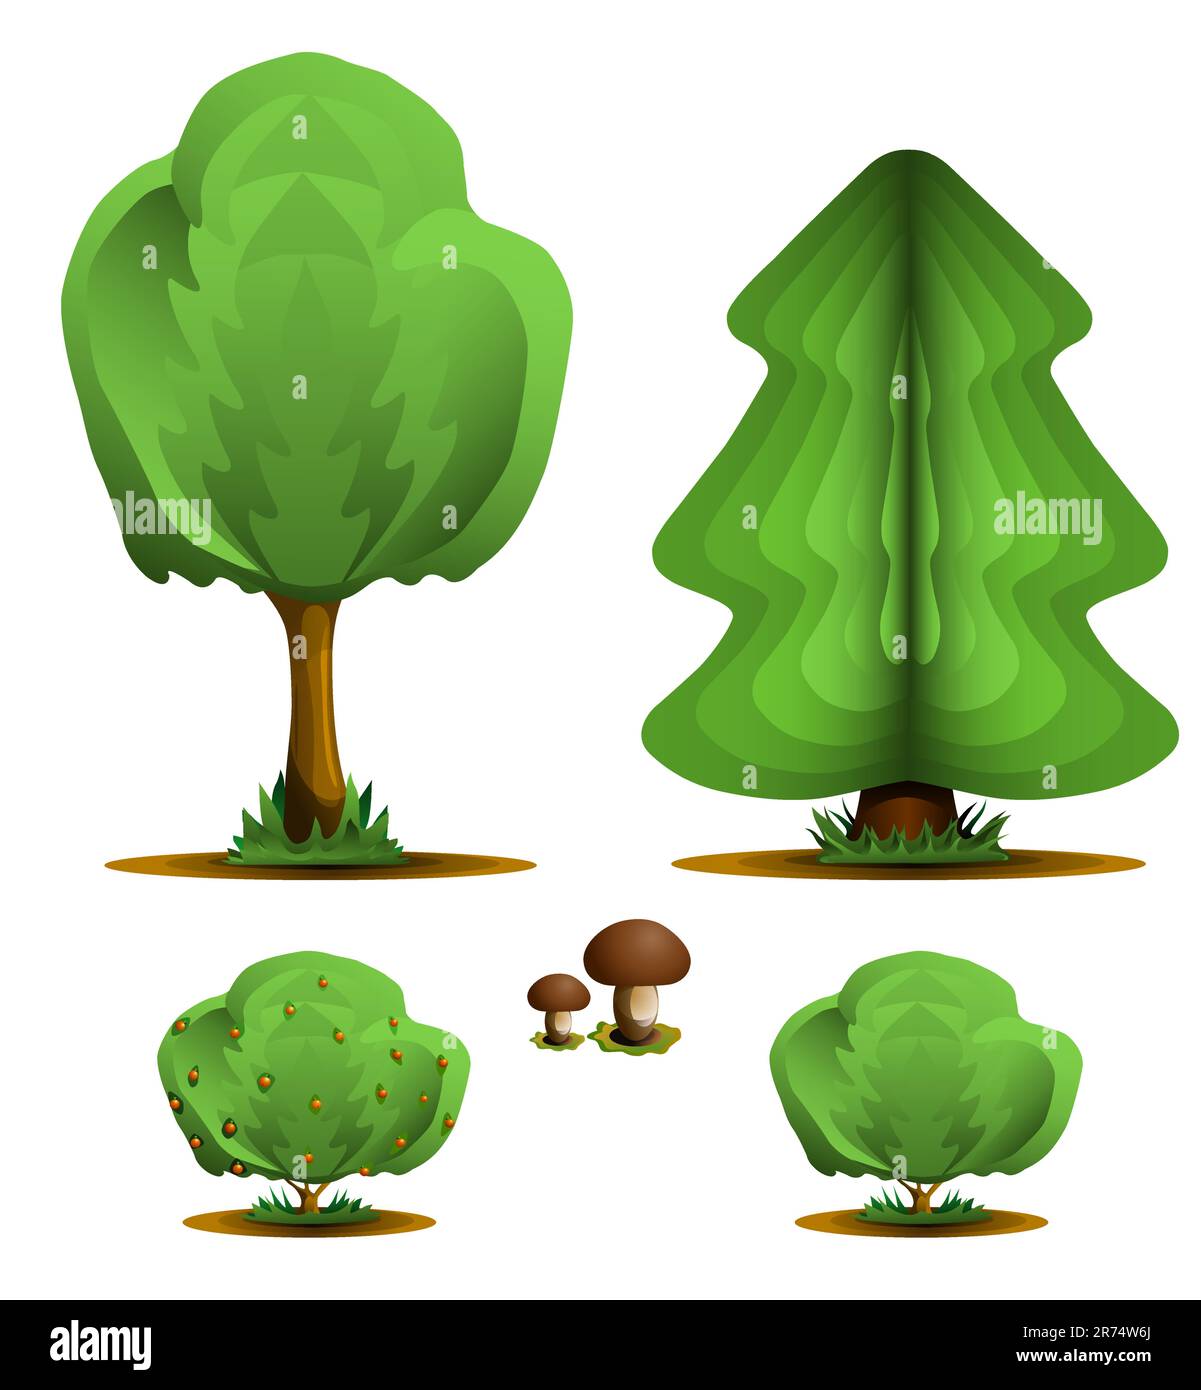 Baum, Kaminbaum, Sträucher, Pilze - Waldpflanzen setzen, Vektordarstellung Stock Vektor